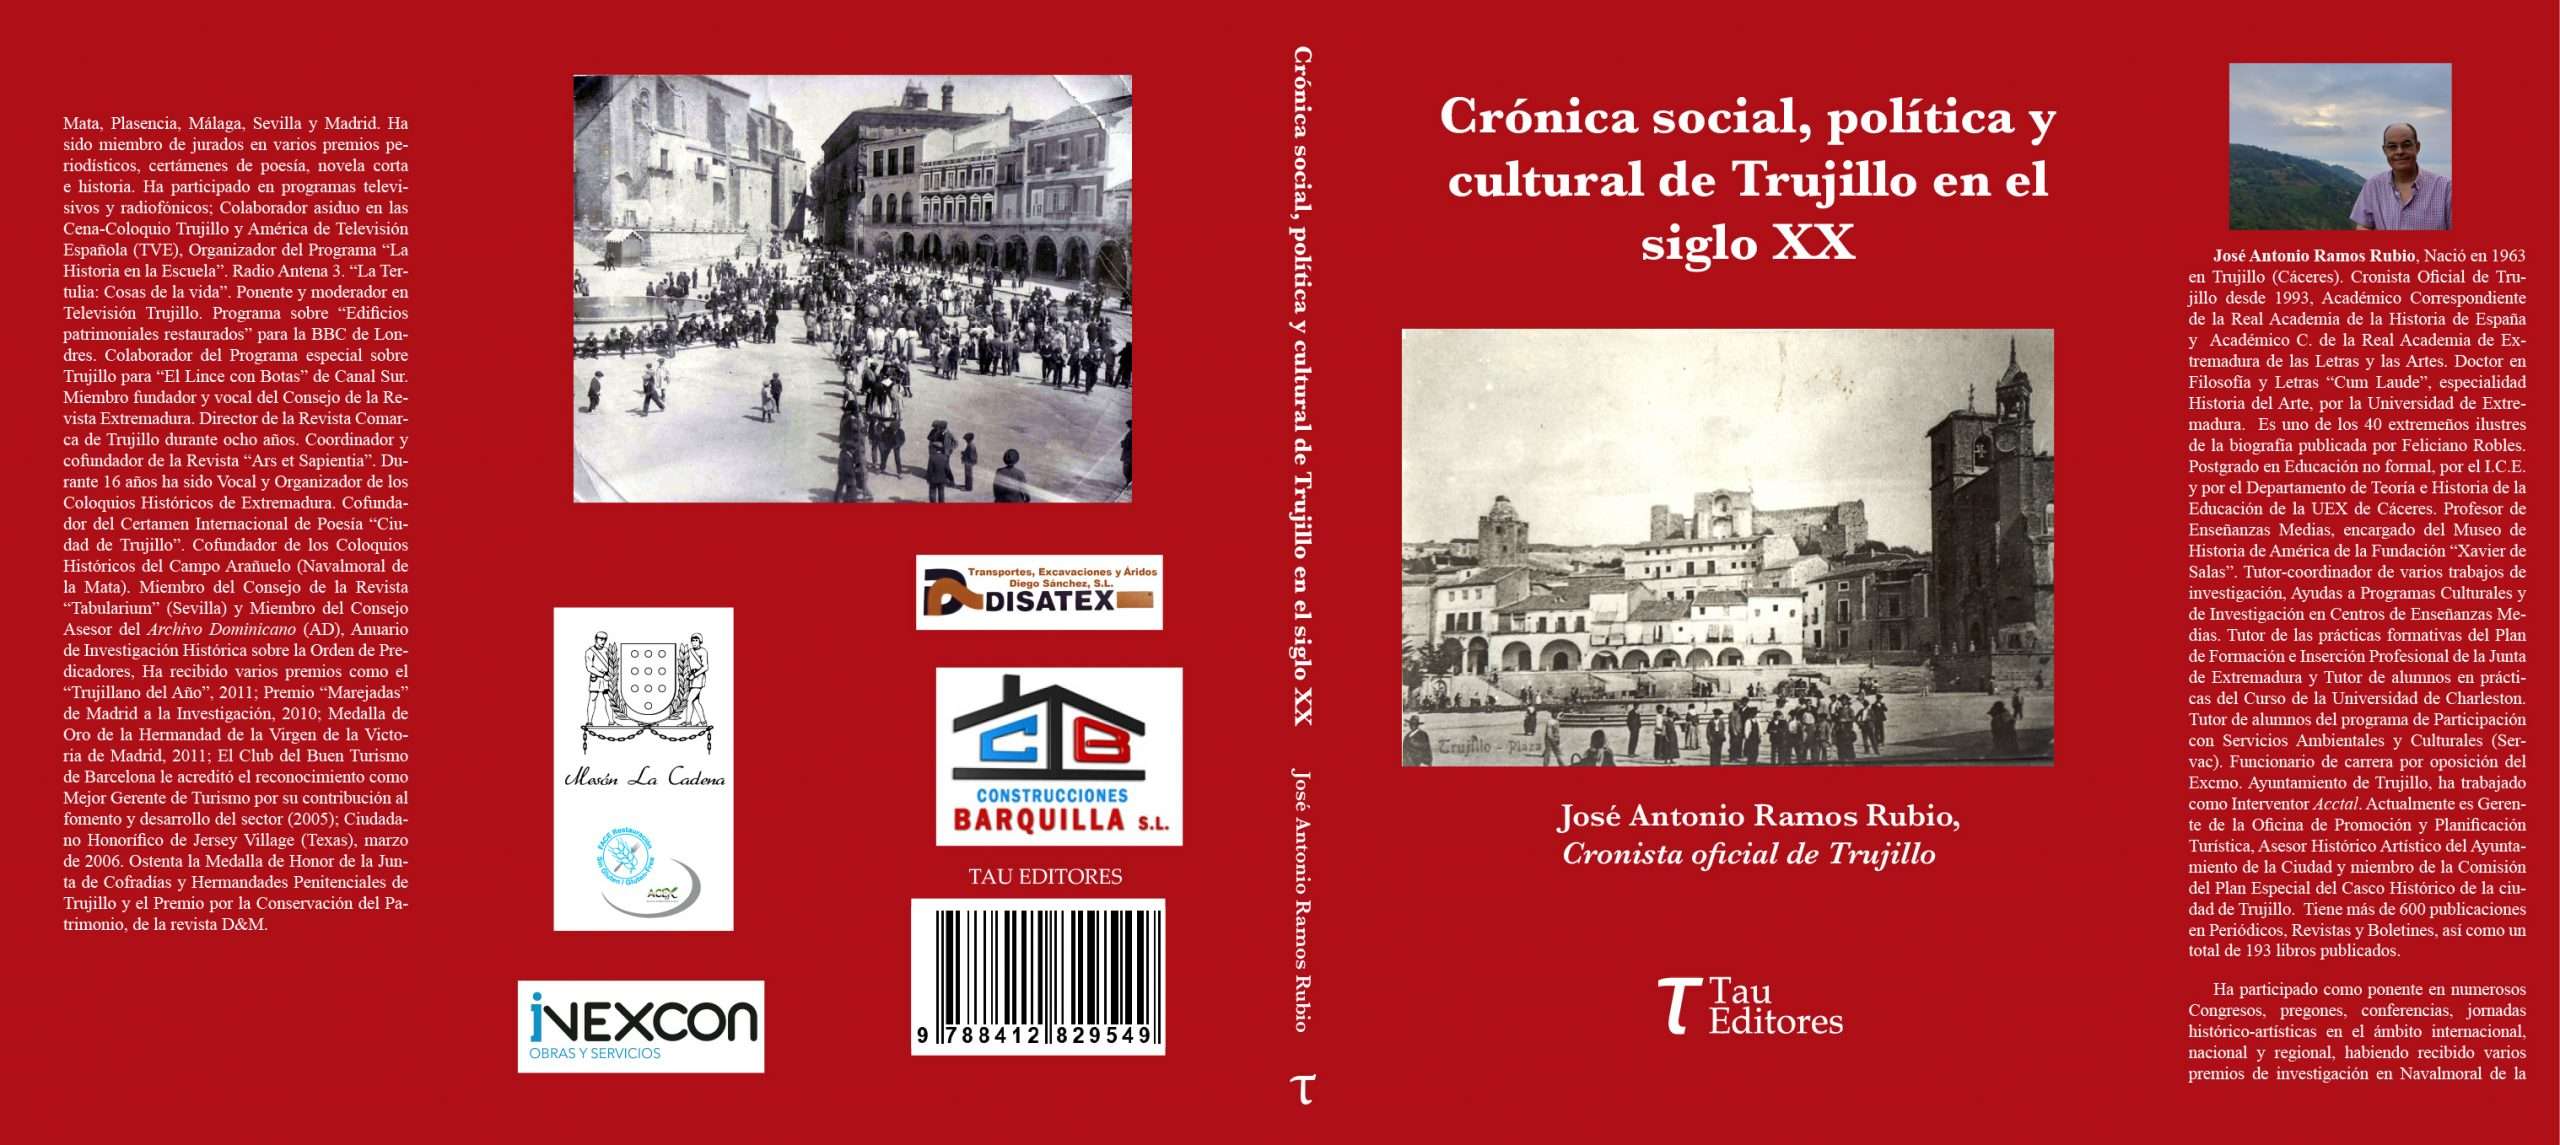 José Antonio Ramos presenta 'Crónica social, política y cultural de Trujillo en el siglo XX'